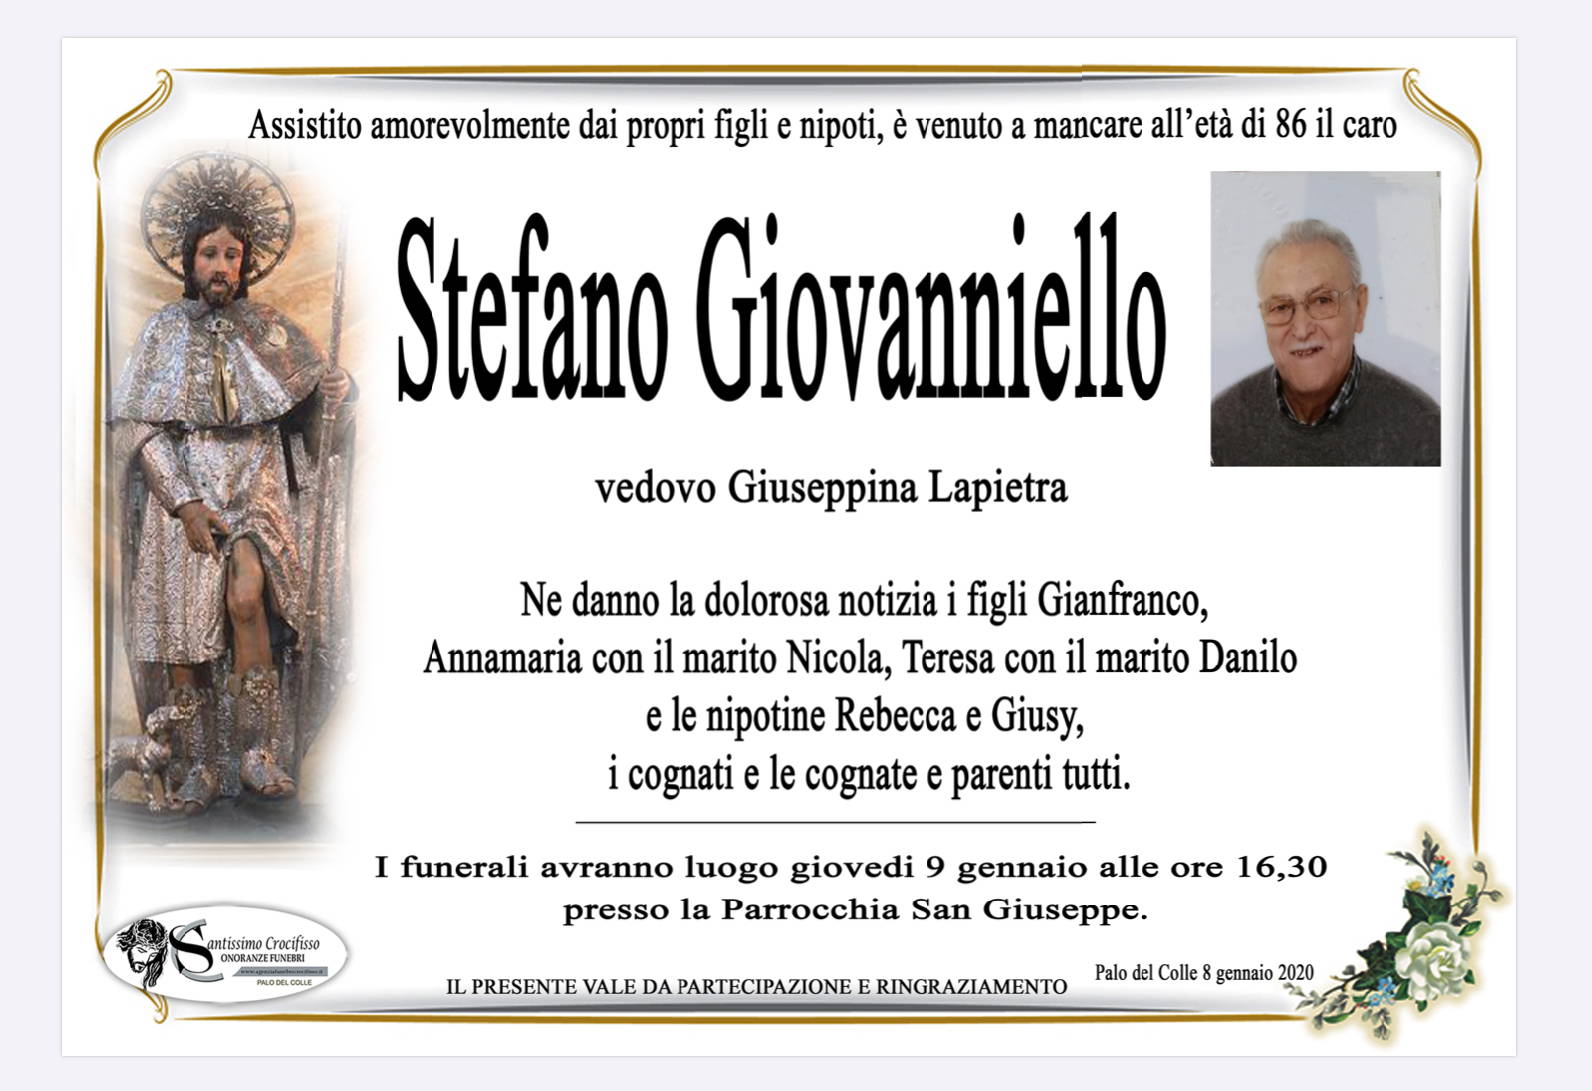 Stefano Giovanniello